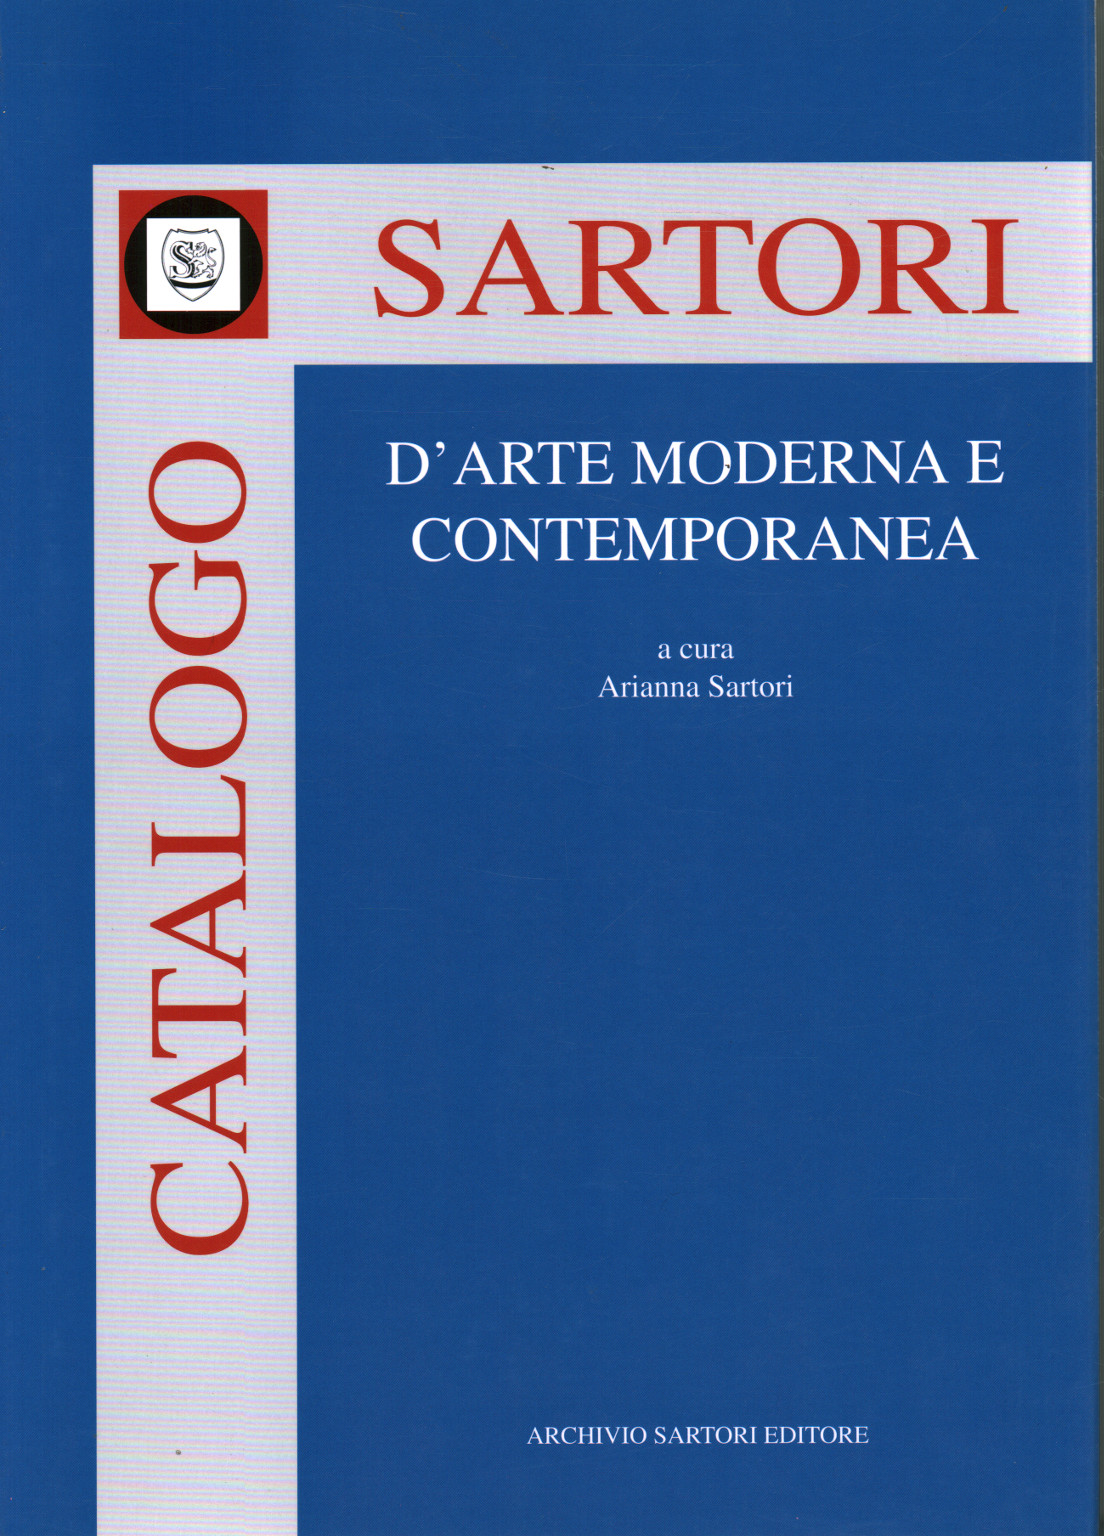 Catálogo de Sartori d arte moderno y contemporáneo, s.una.